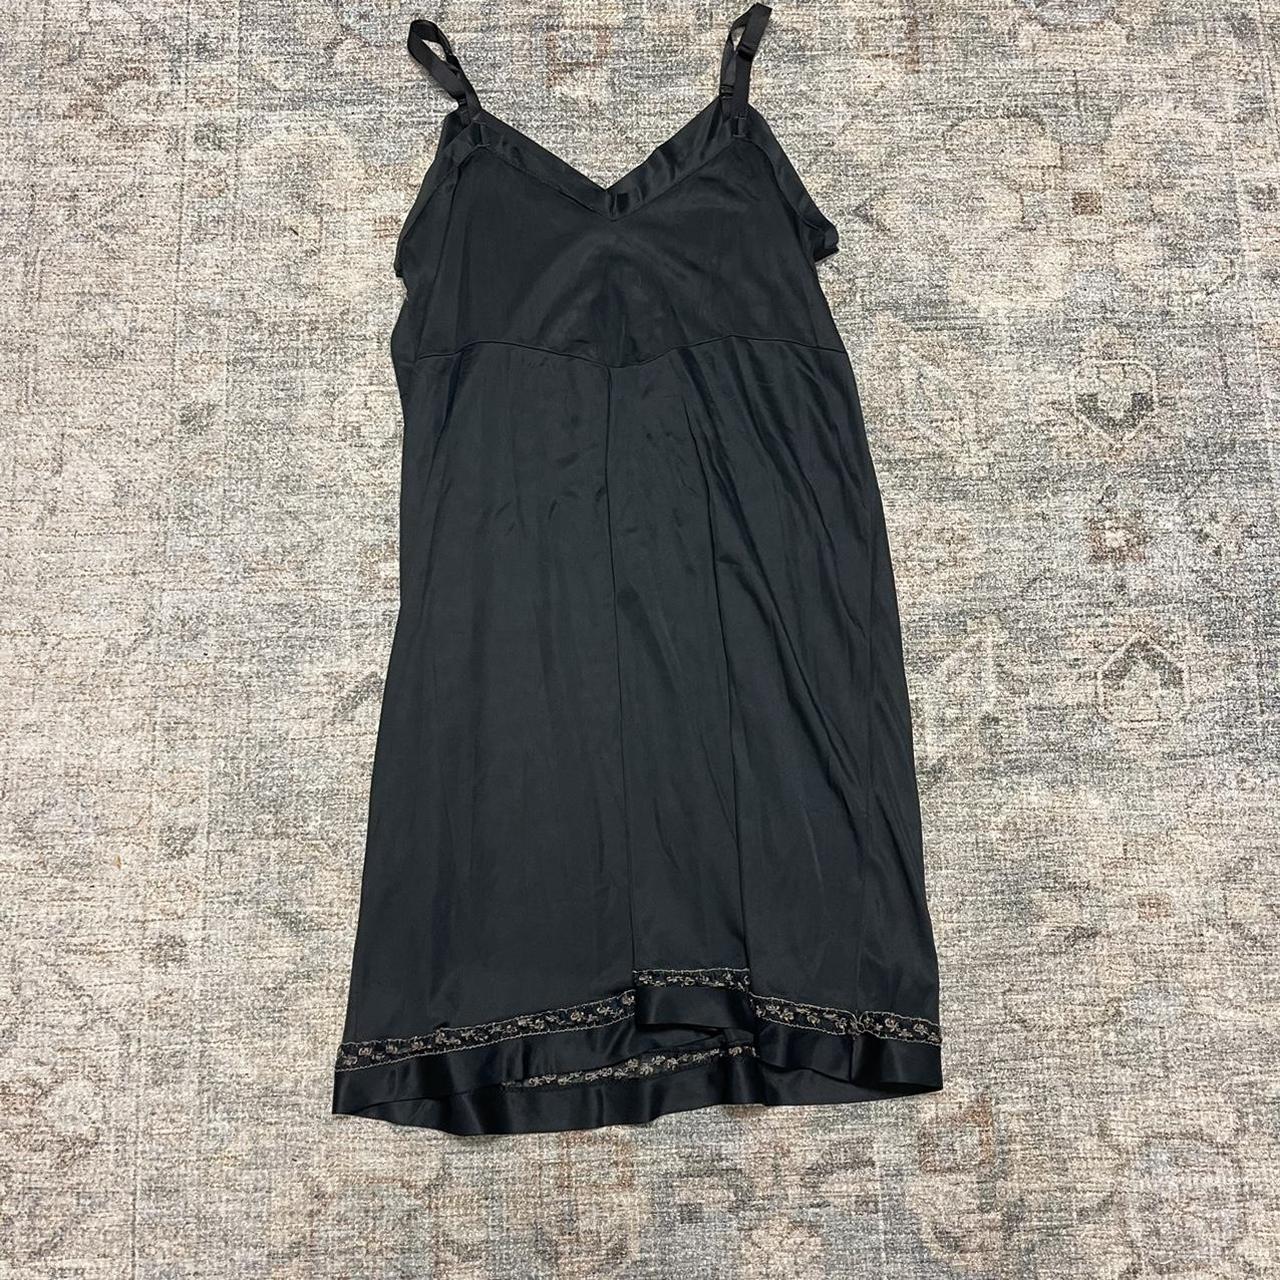 Vintage Black Satin Slip Dress No Tag (Fits L) Can... - Depop